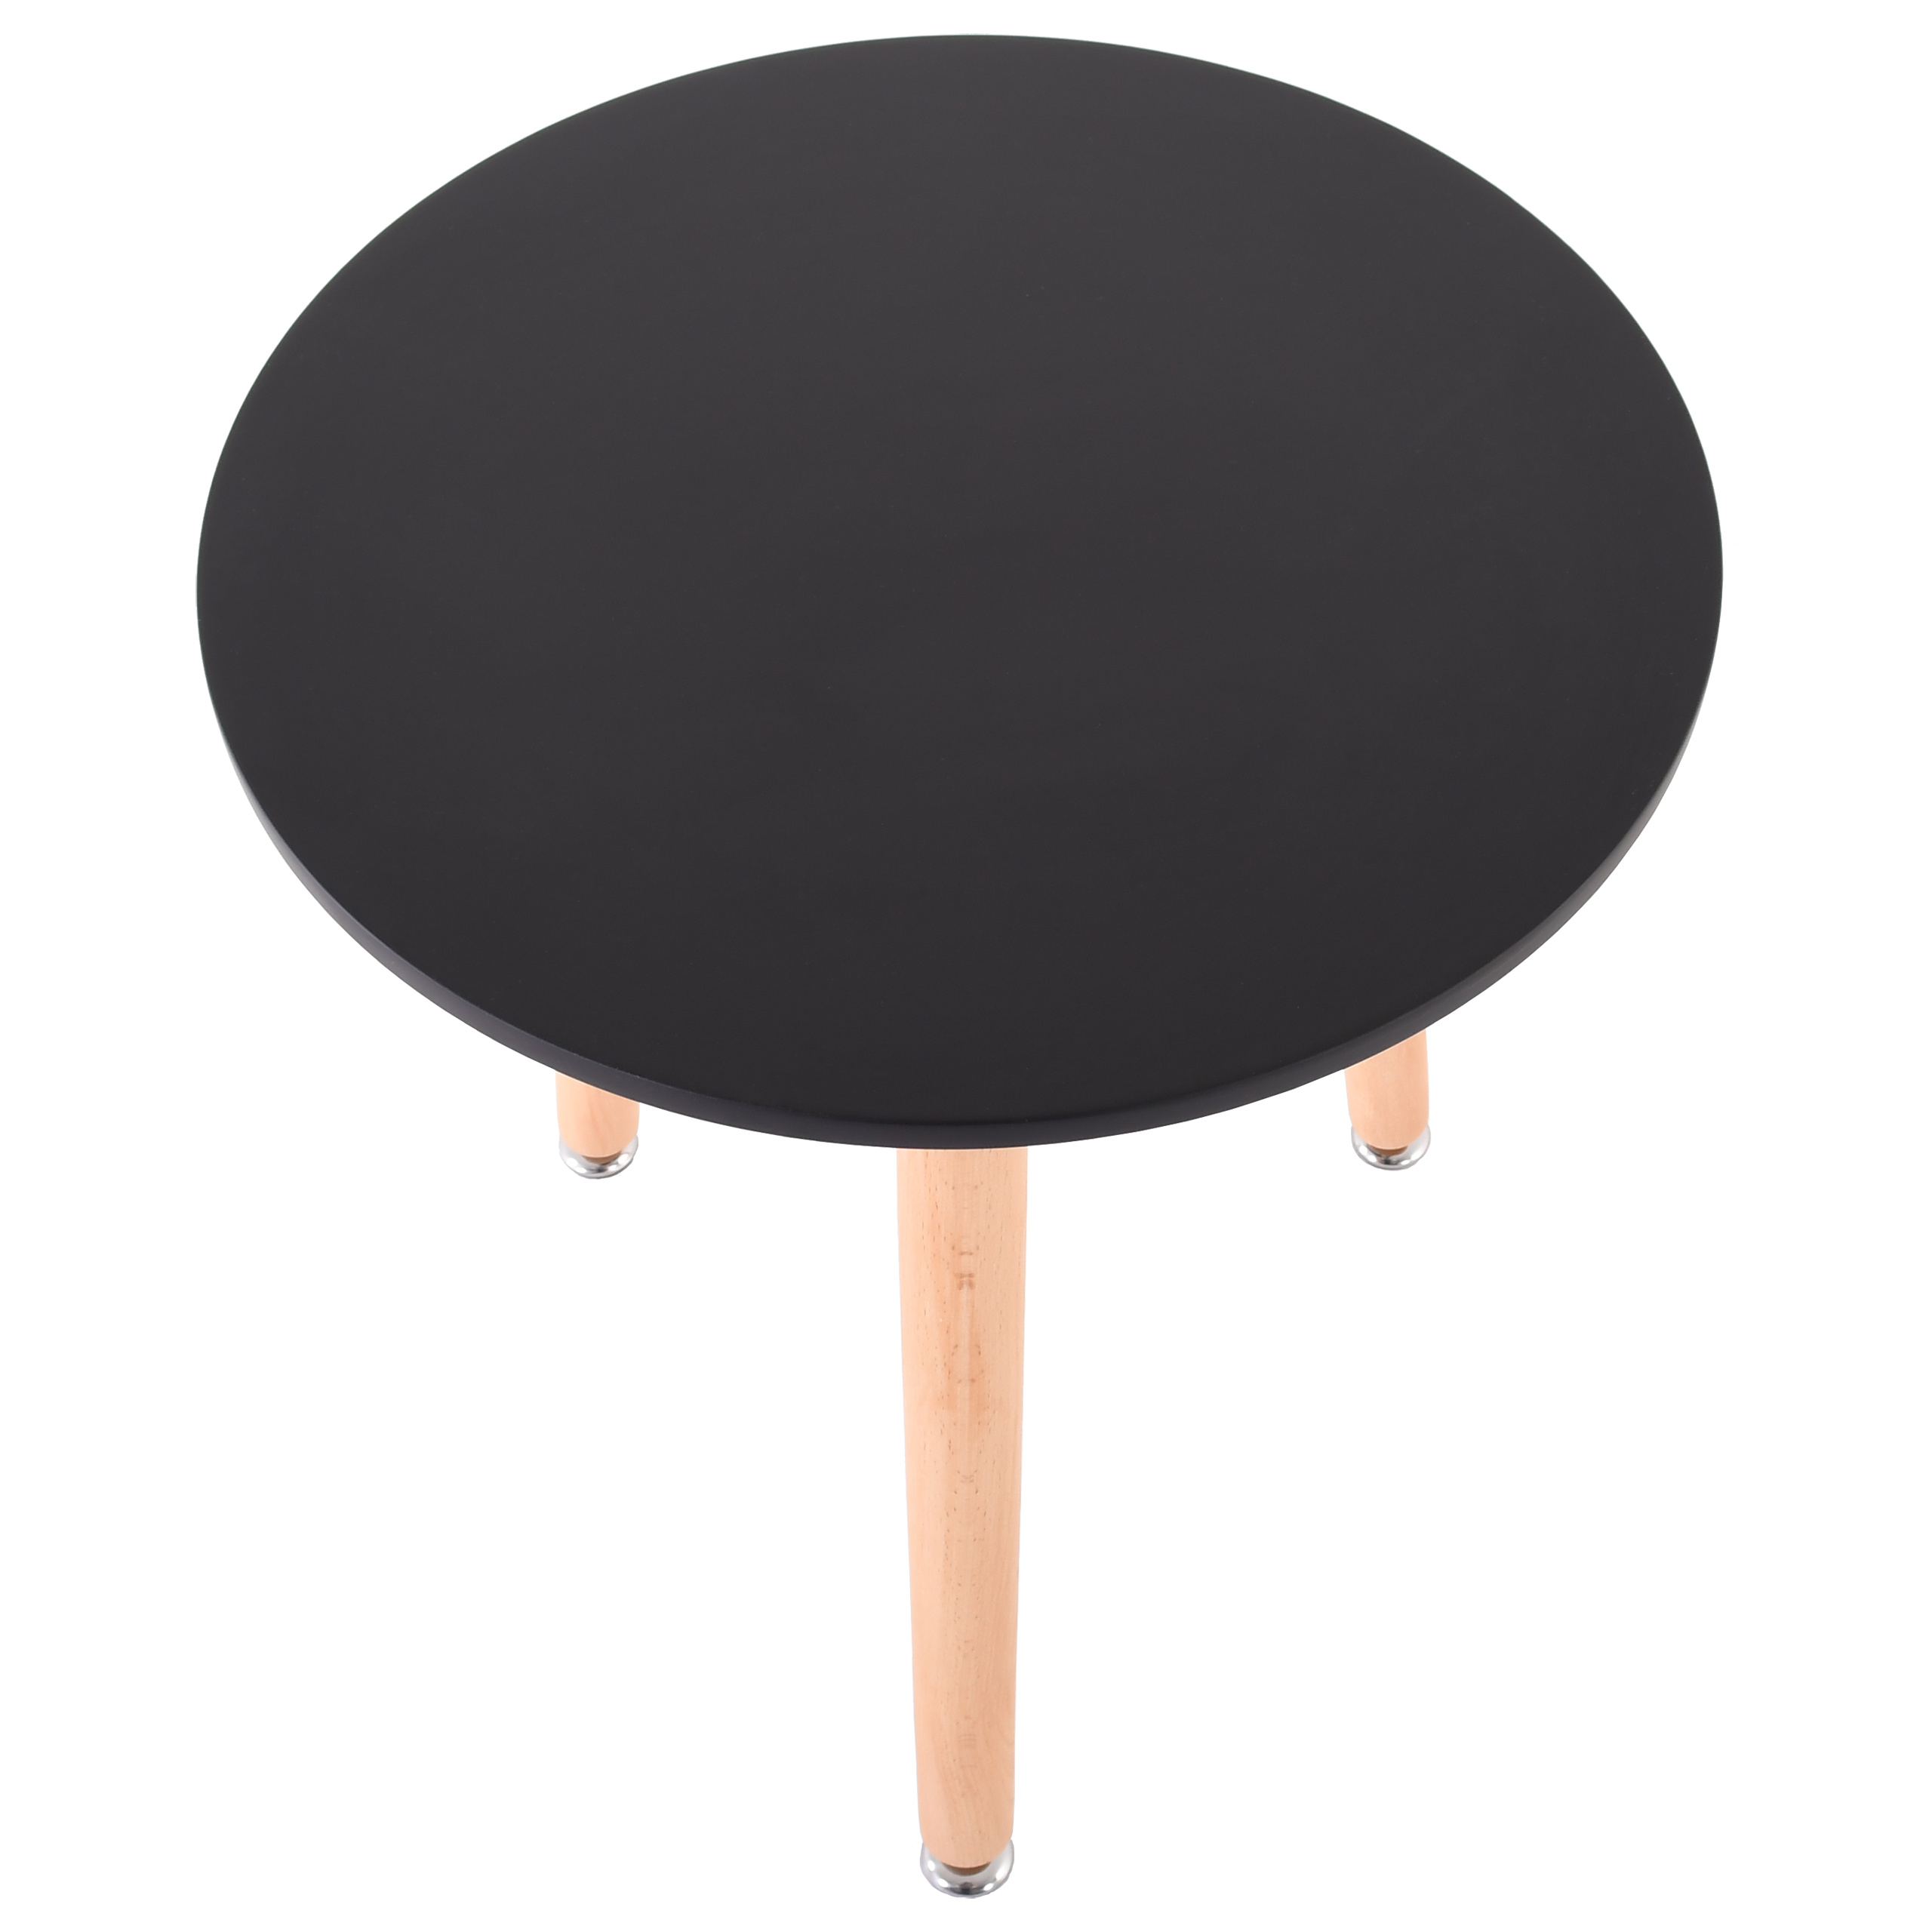 Raburg Beistell-Tisch Smilla klein, Seiden-Schwarz, 52 cm hoch, 45 cm Durchmesser, Beine Buche